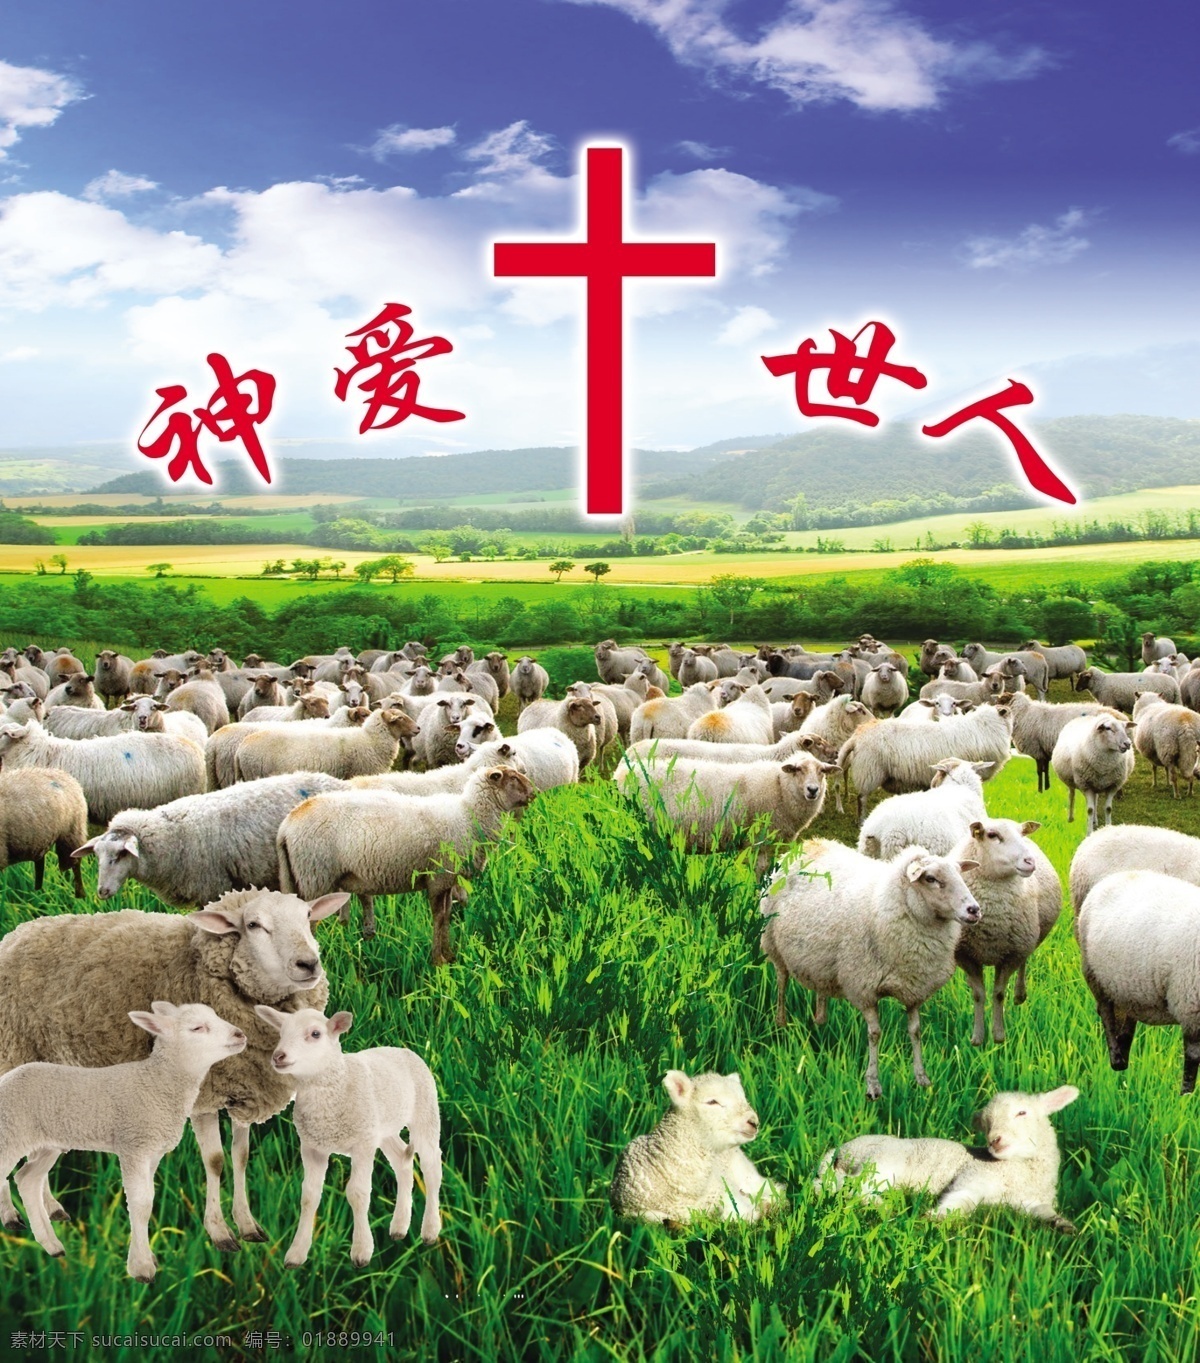 基督教 牧羊图 草地 蓝天 十字架 神爱世人 羊群 躺卧的羊 展板模板 广告设计模板 源文件